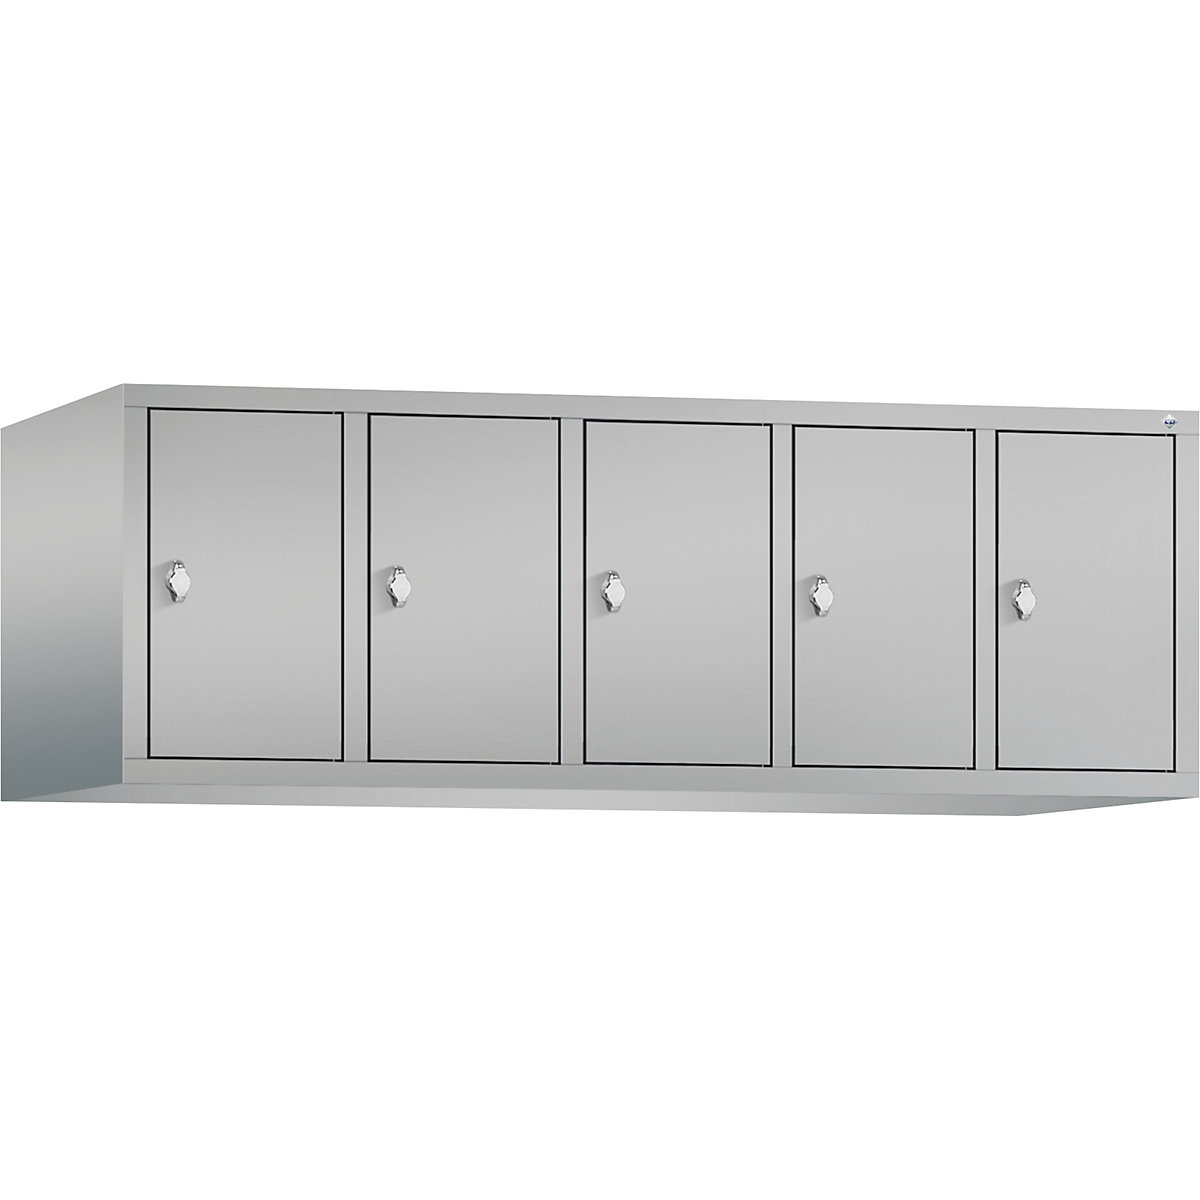 C+P – Altillo CLASSIC, 5 compartimentos, anchura de compartimento 300 mm, aluminio blanco